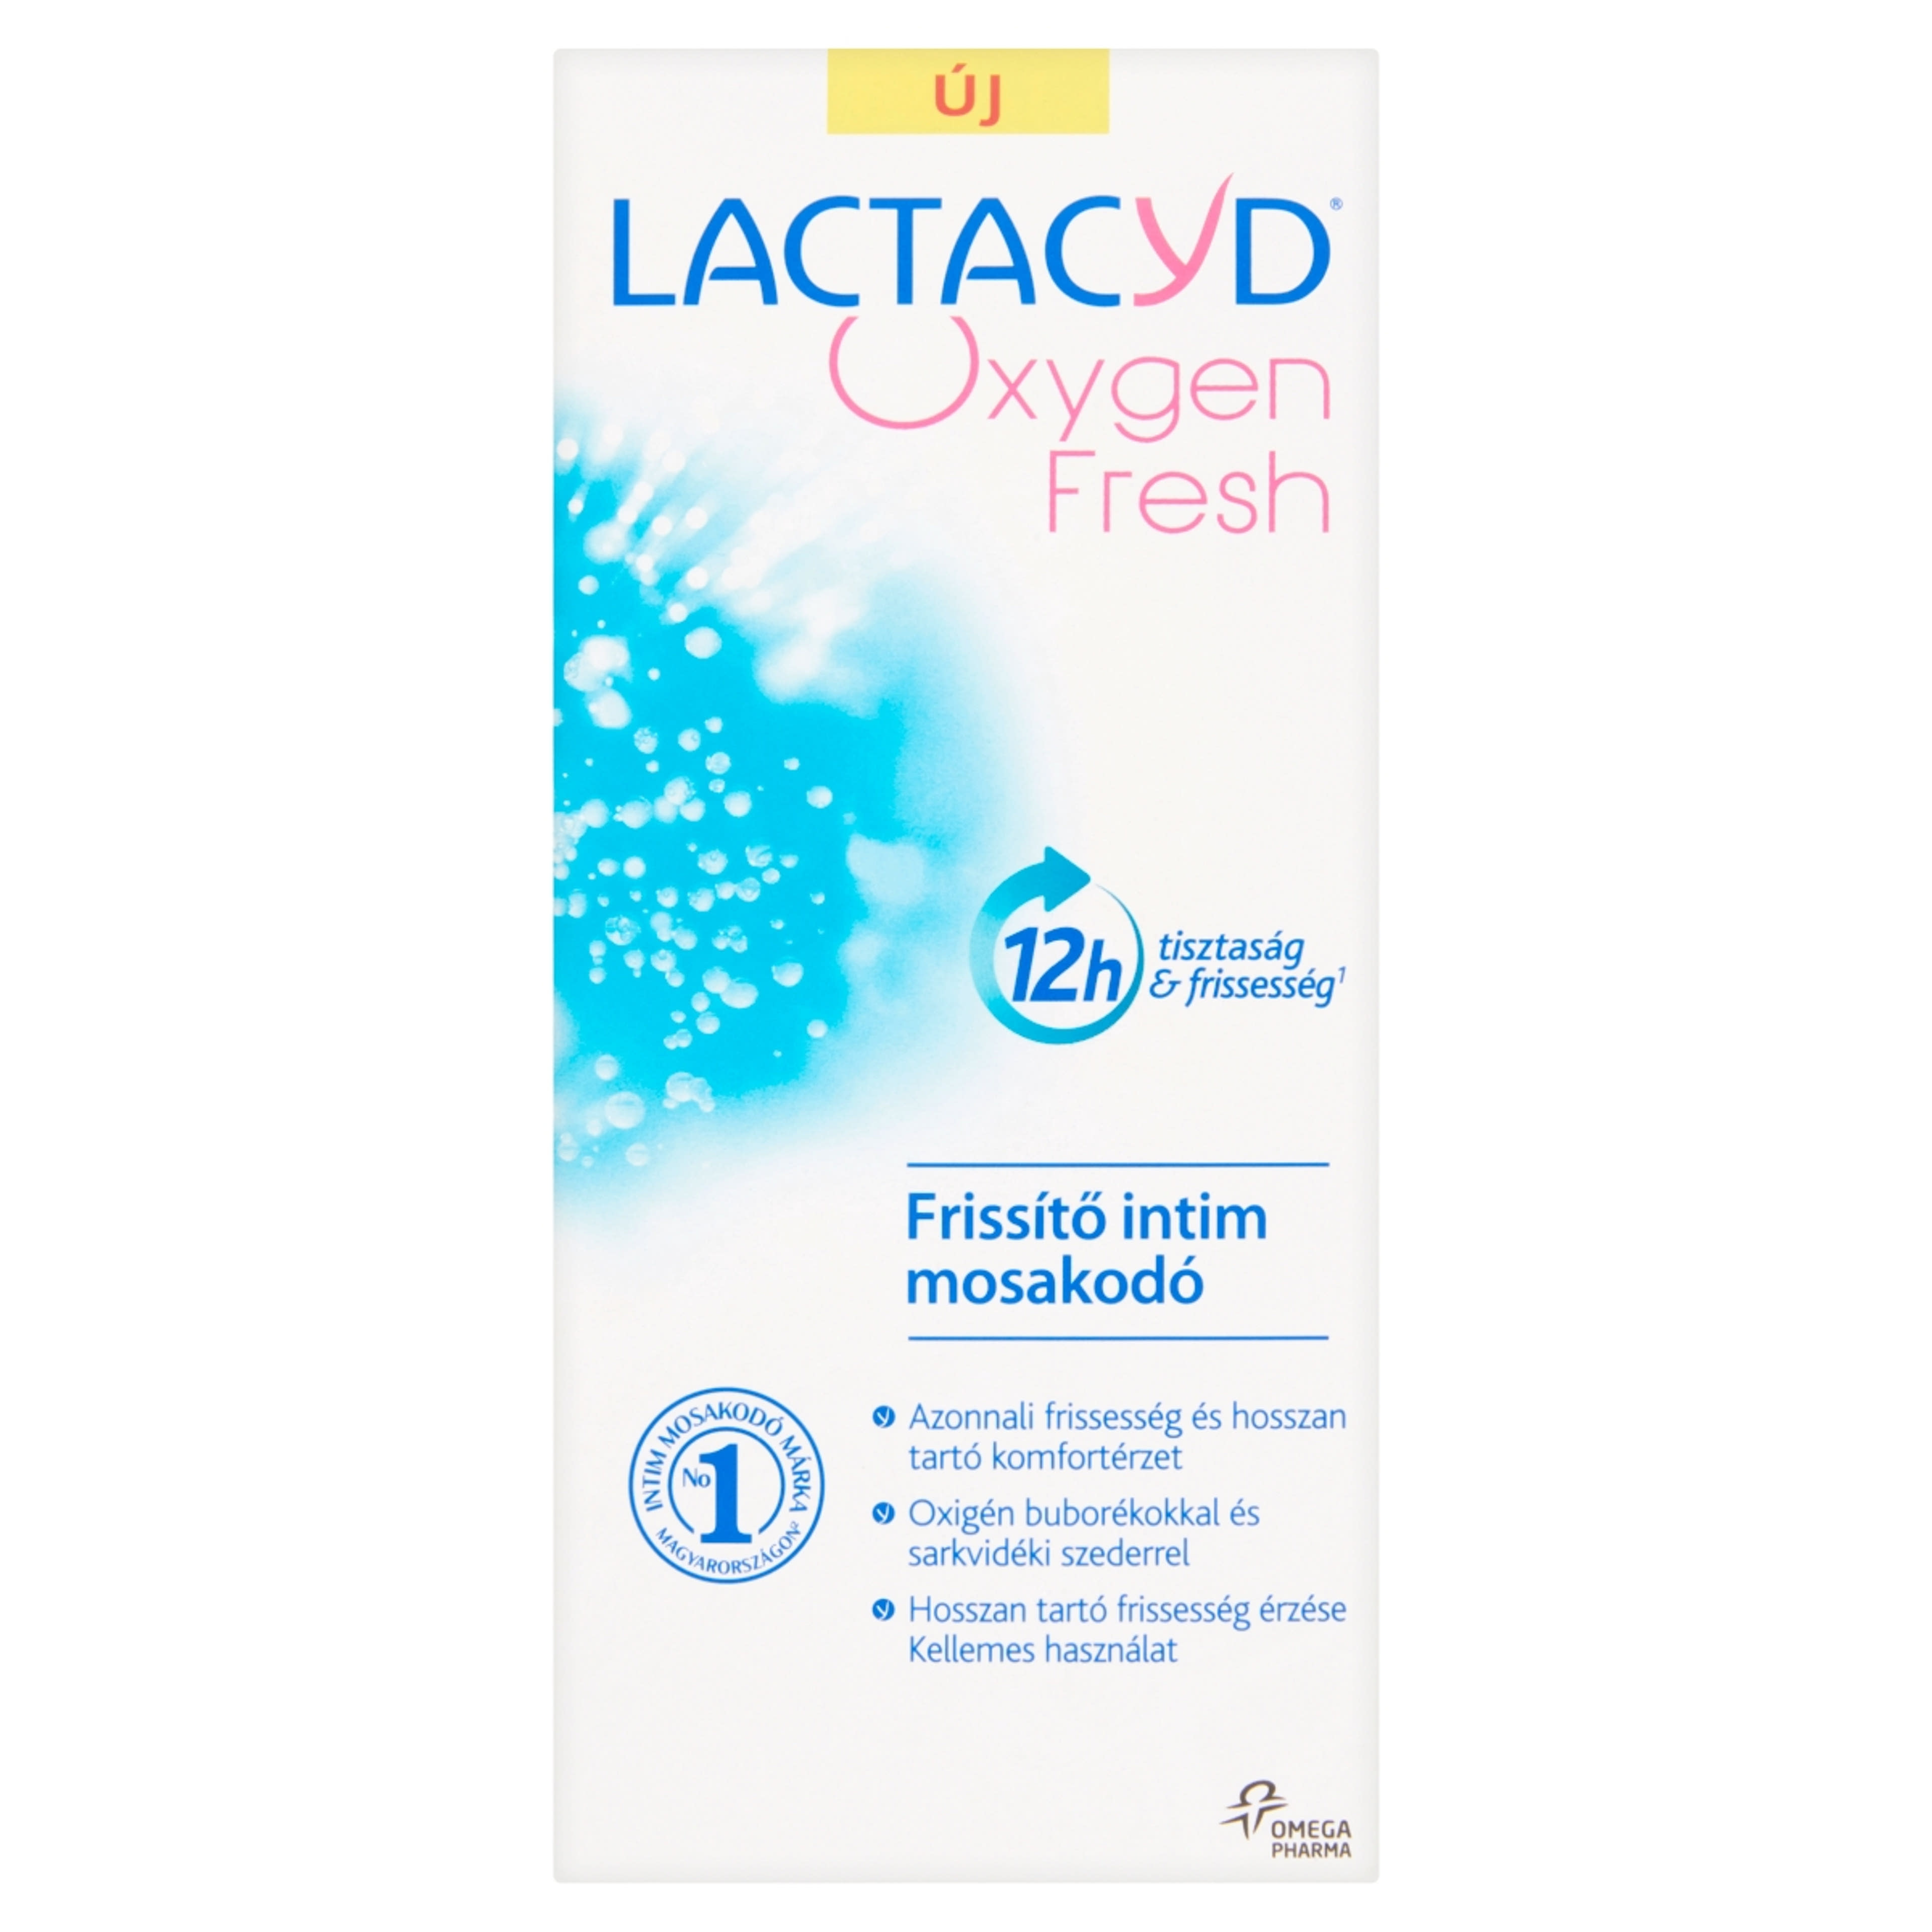 Lactacyd Oxygen Fresh intim mosakodó - 200 ml-1